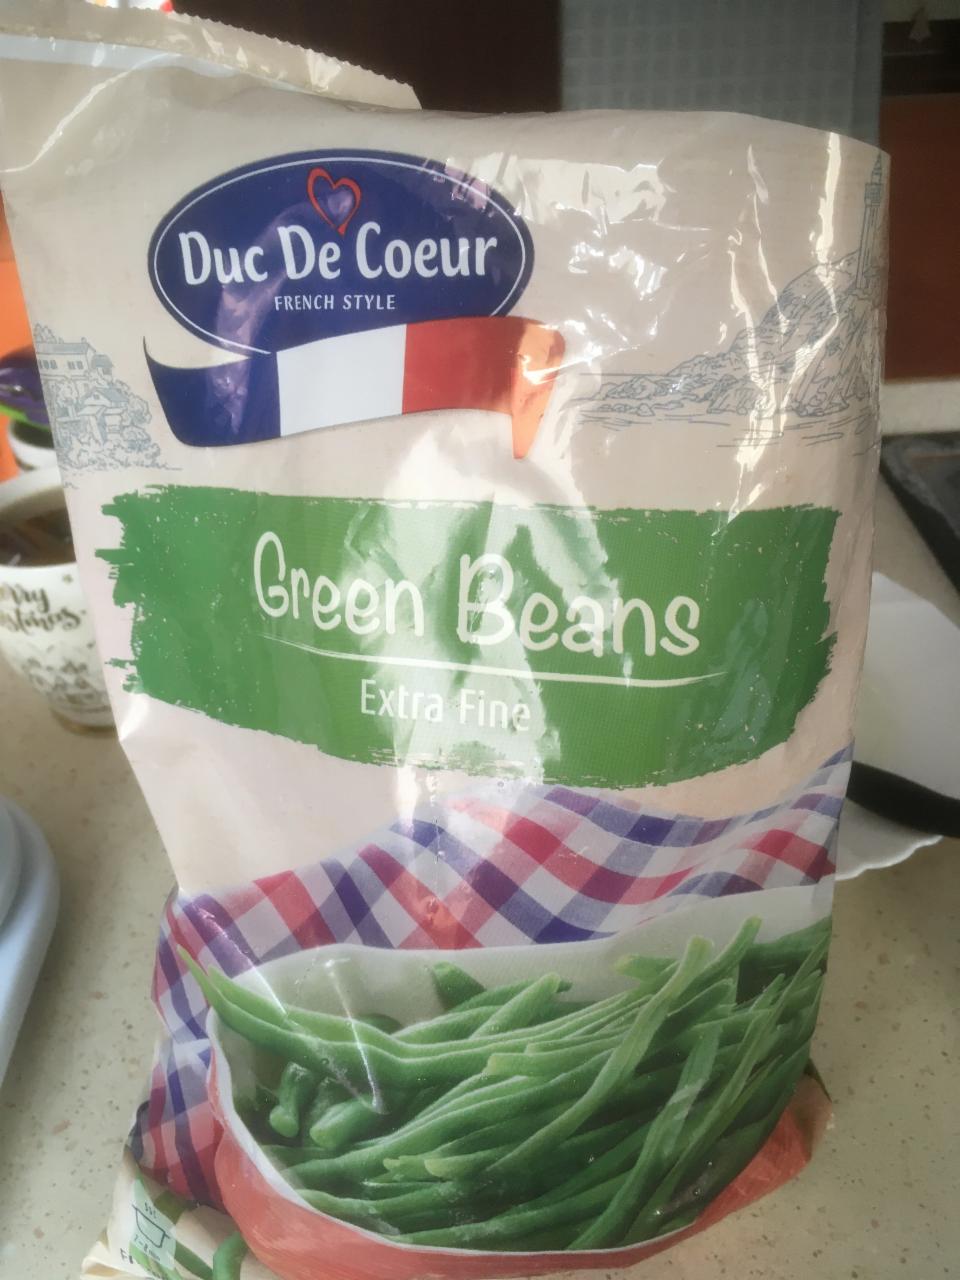 Képek - Green Beans extra fine Duc de Coeur